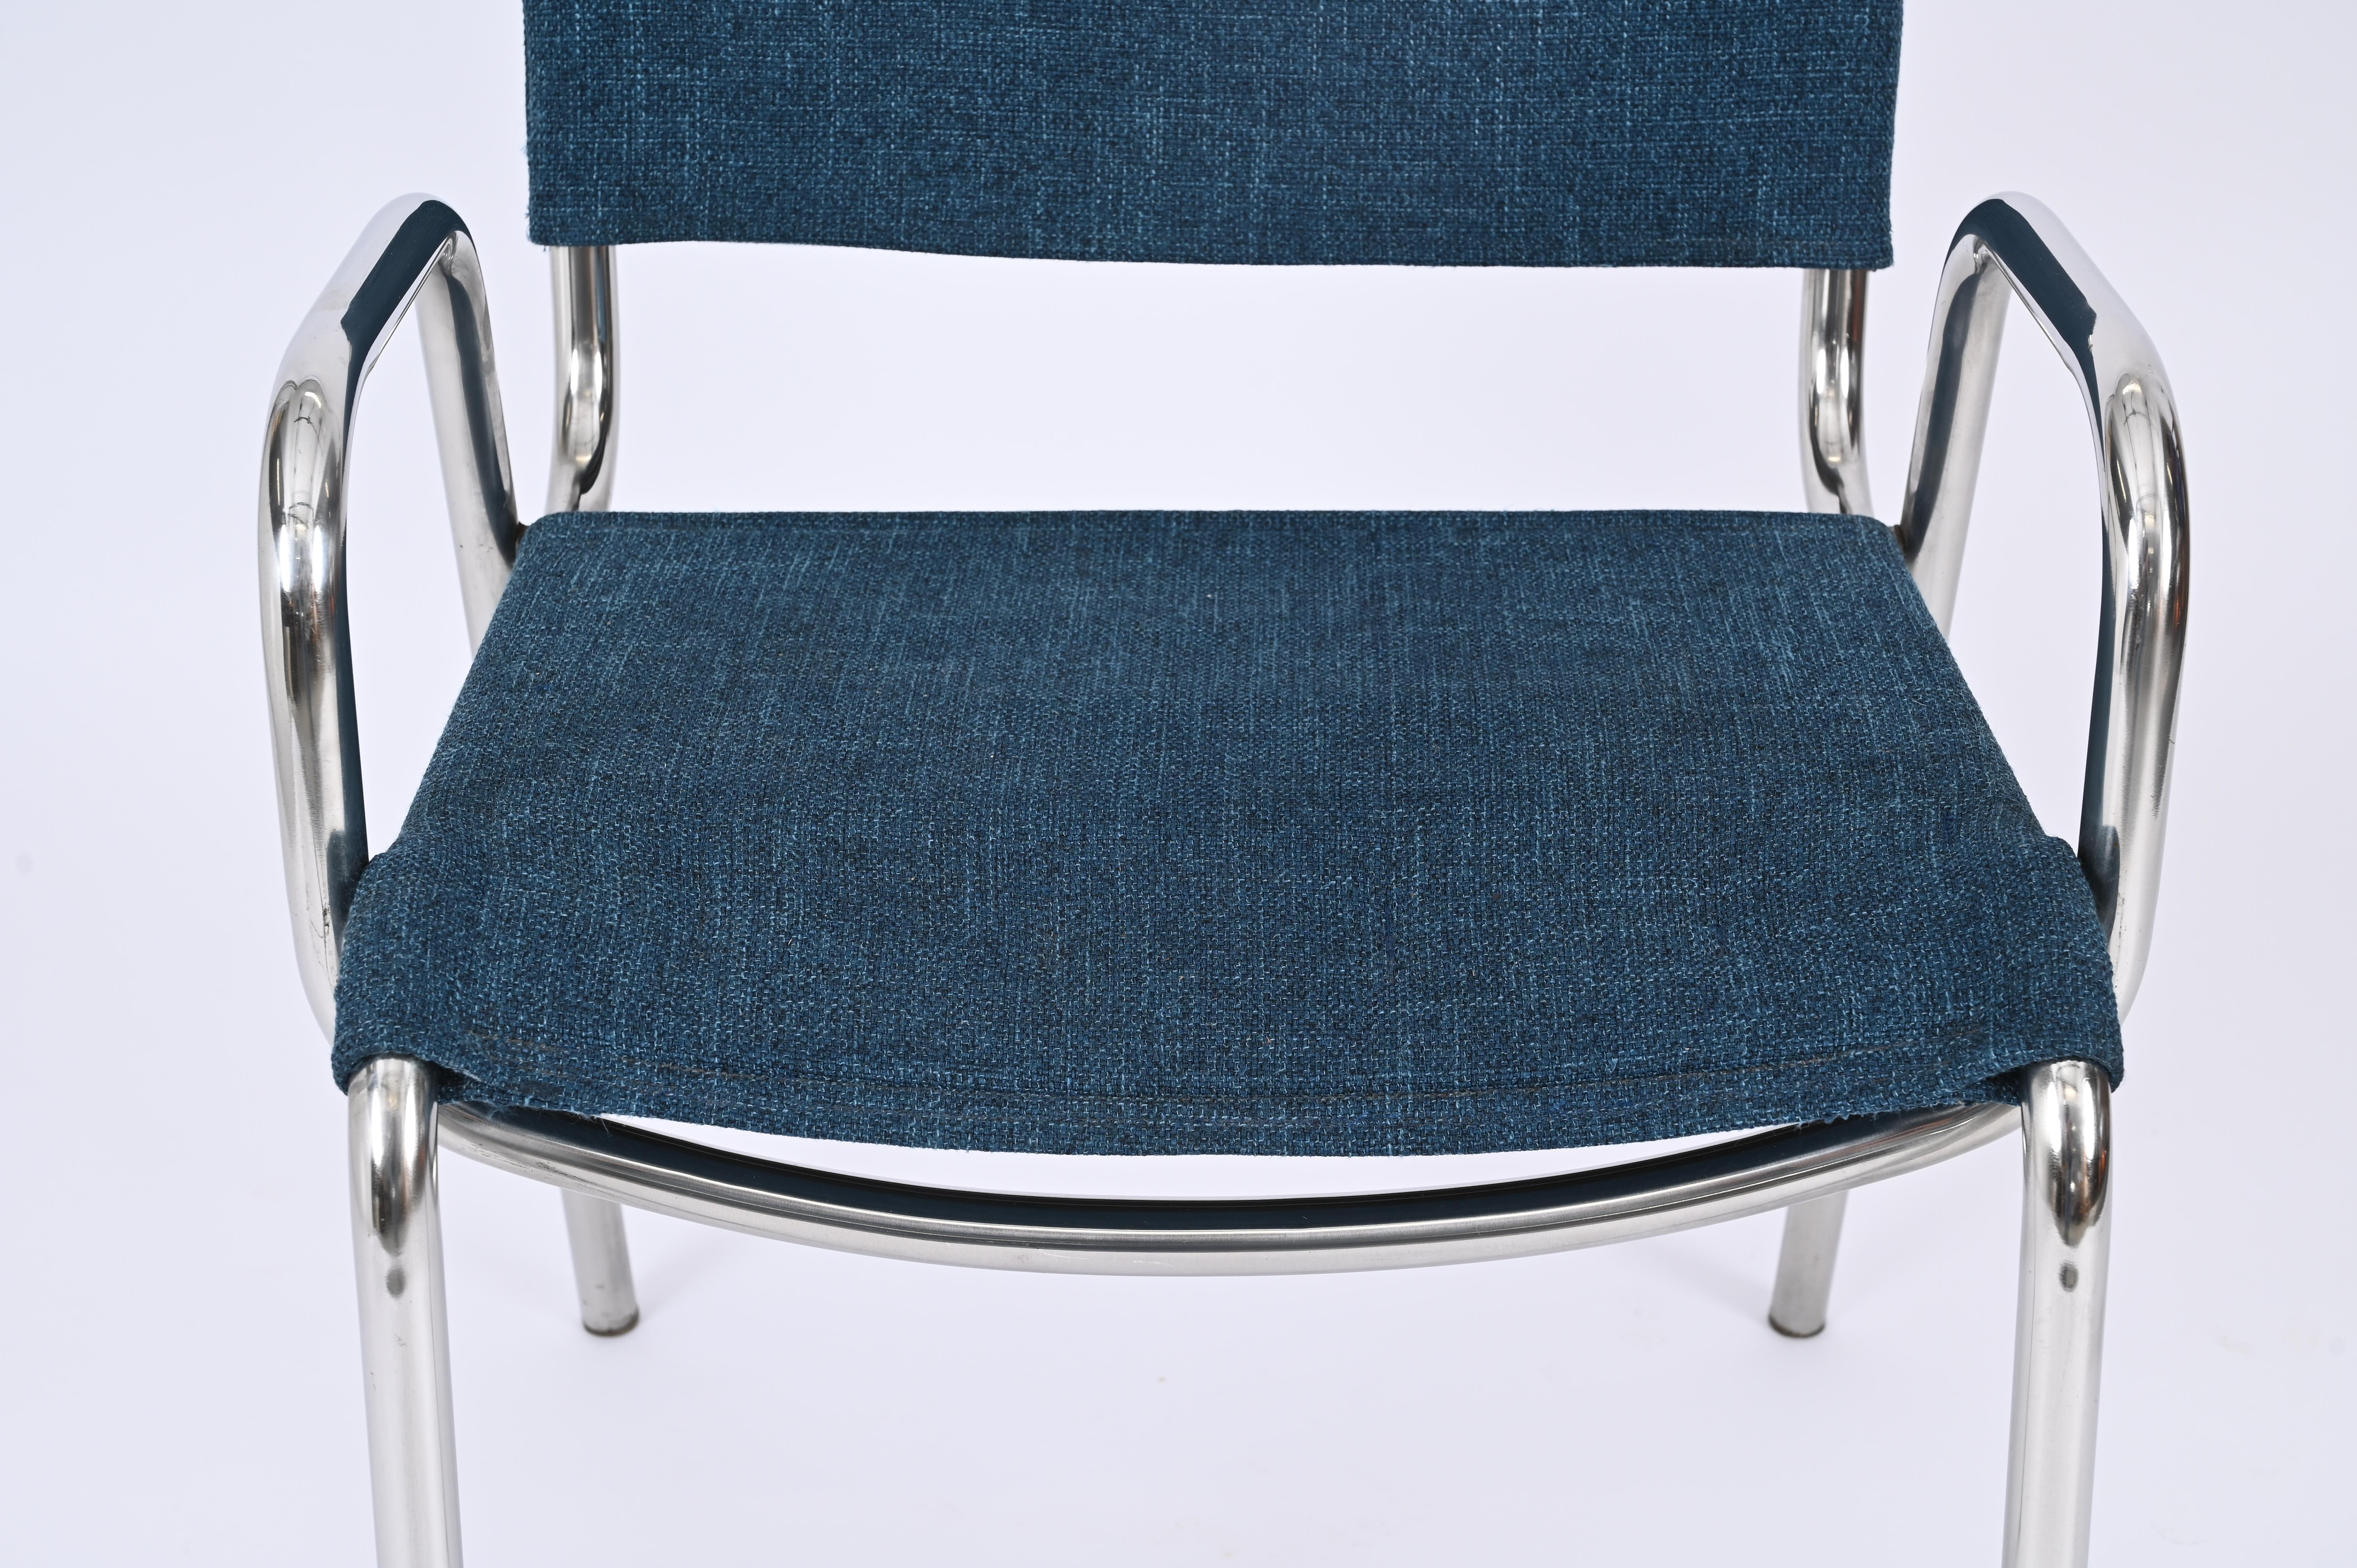 Pair of Blue Castiglietta Dining Chairs by Castiglioni for Zanotta, Italy 1960s For Sale 6